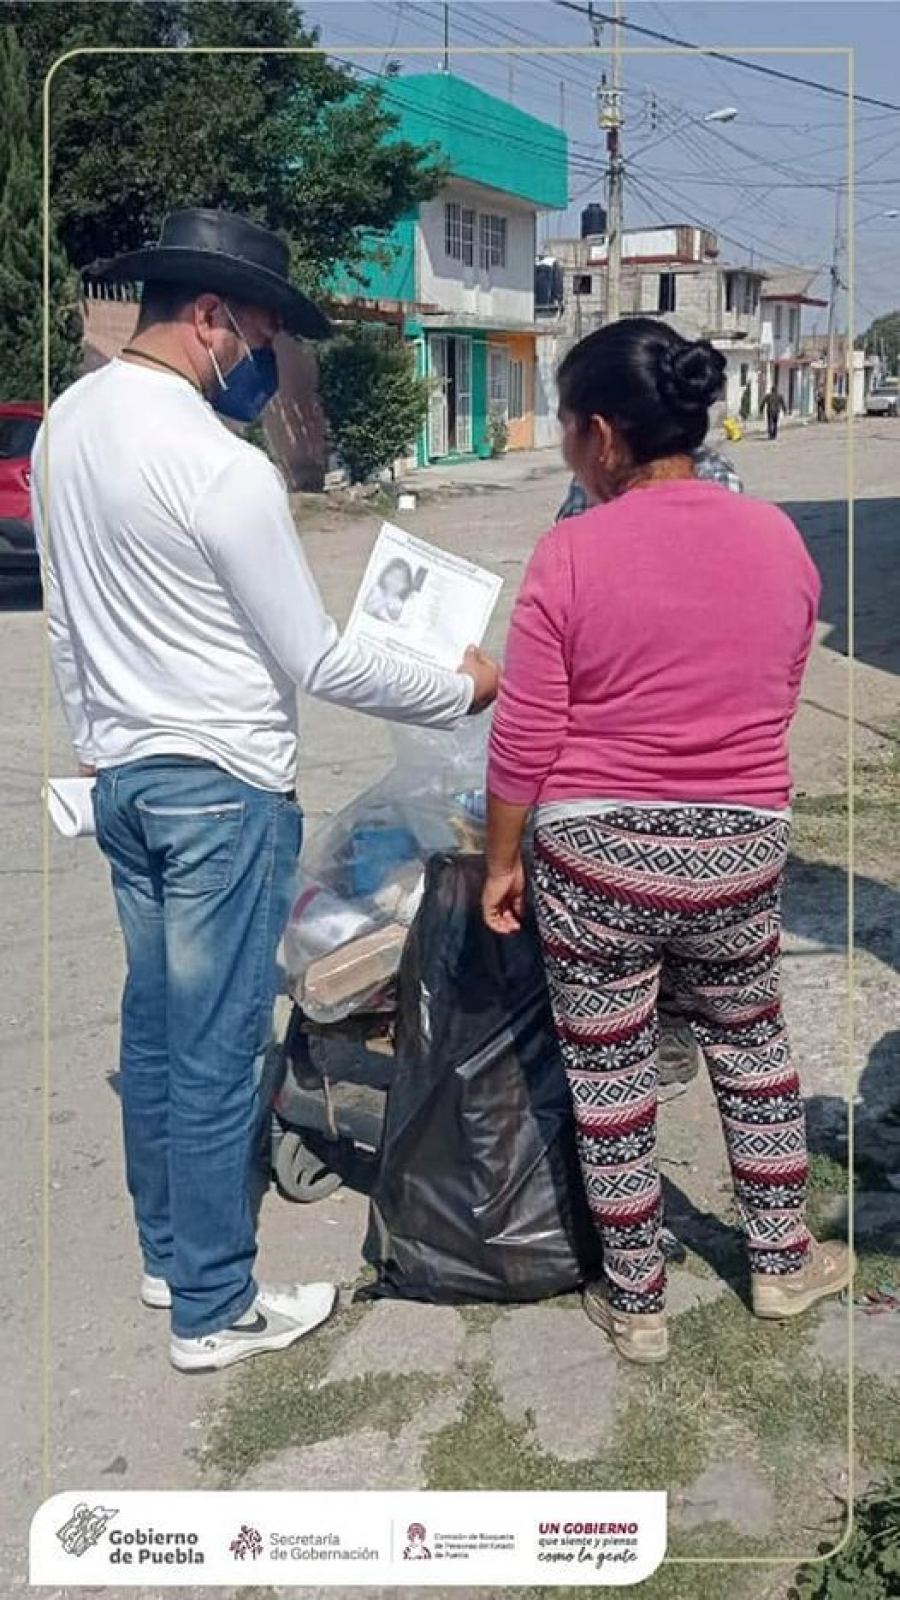 Como parte de nuestra labor realizamos Acciones de Búsqueda de Personas Desaparecidas o No Localizadas en el infonavit Manuel Rivera Anaya de la ciudad de Puebla, en coordinación Secretaría de Seguridad Ciudadana de Puebla.